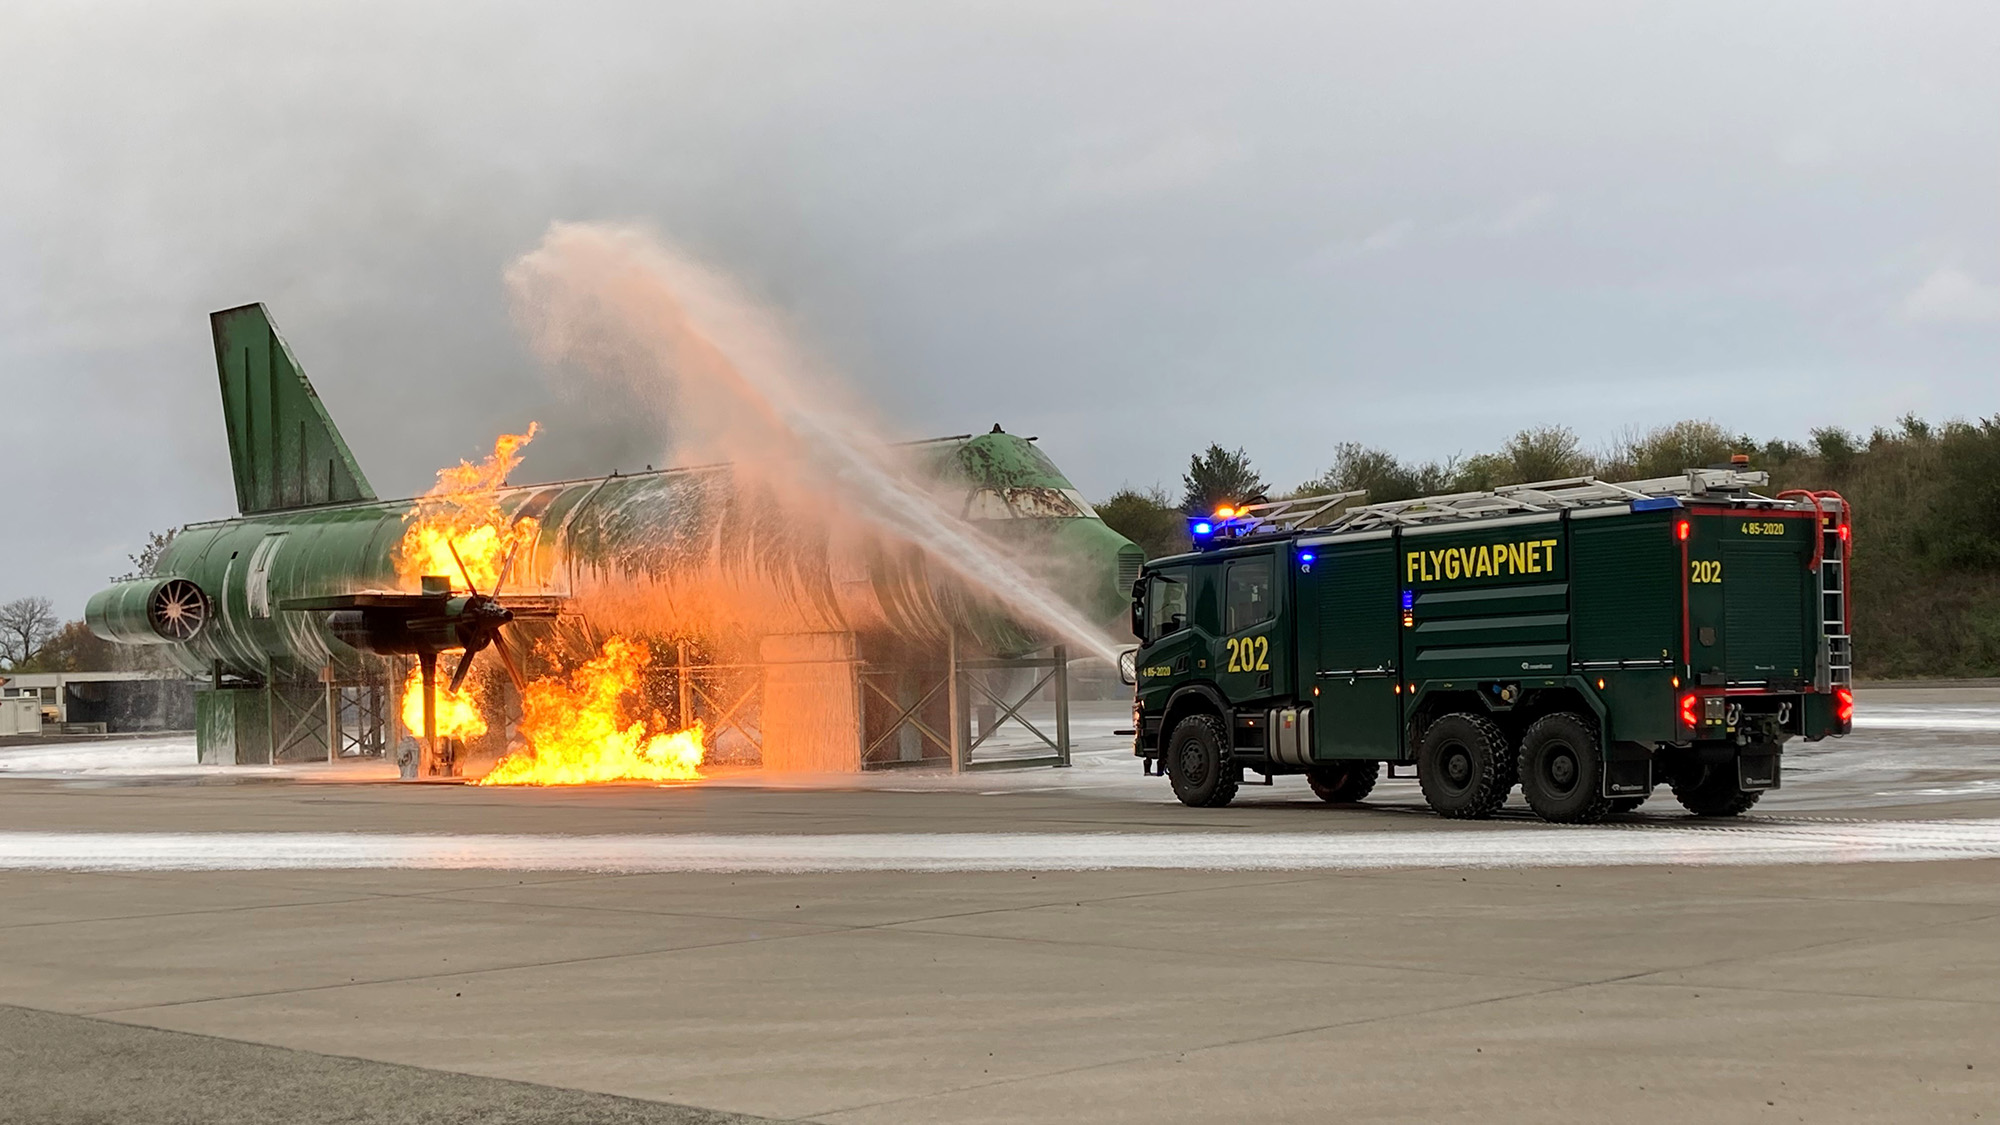 Räddningsbil sprutar släckvätska för att släcka eld i en flygplansmodell i naturlig storlek.